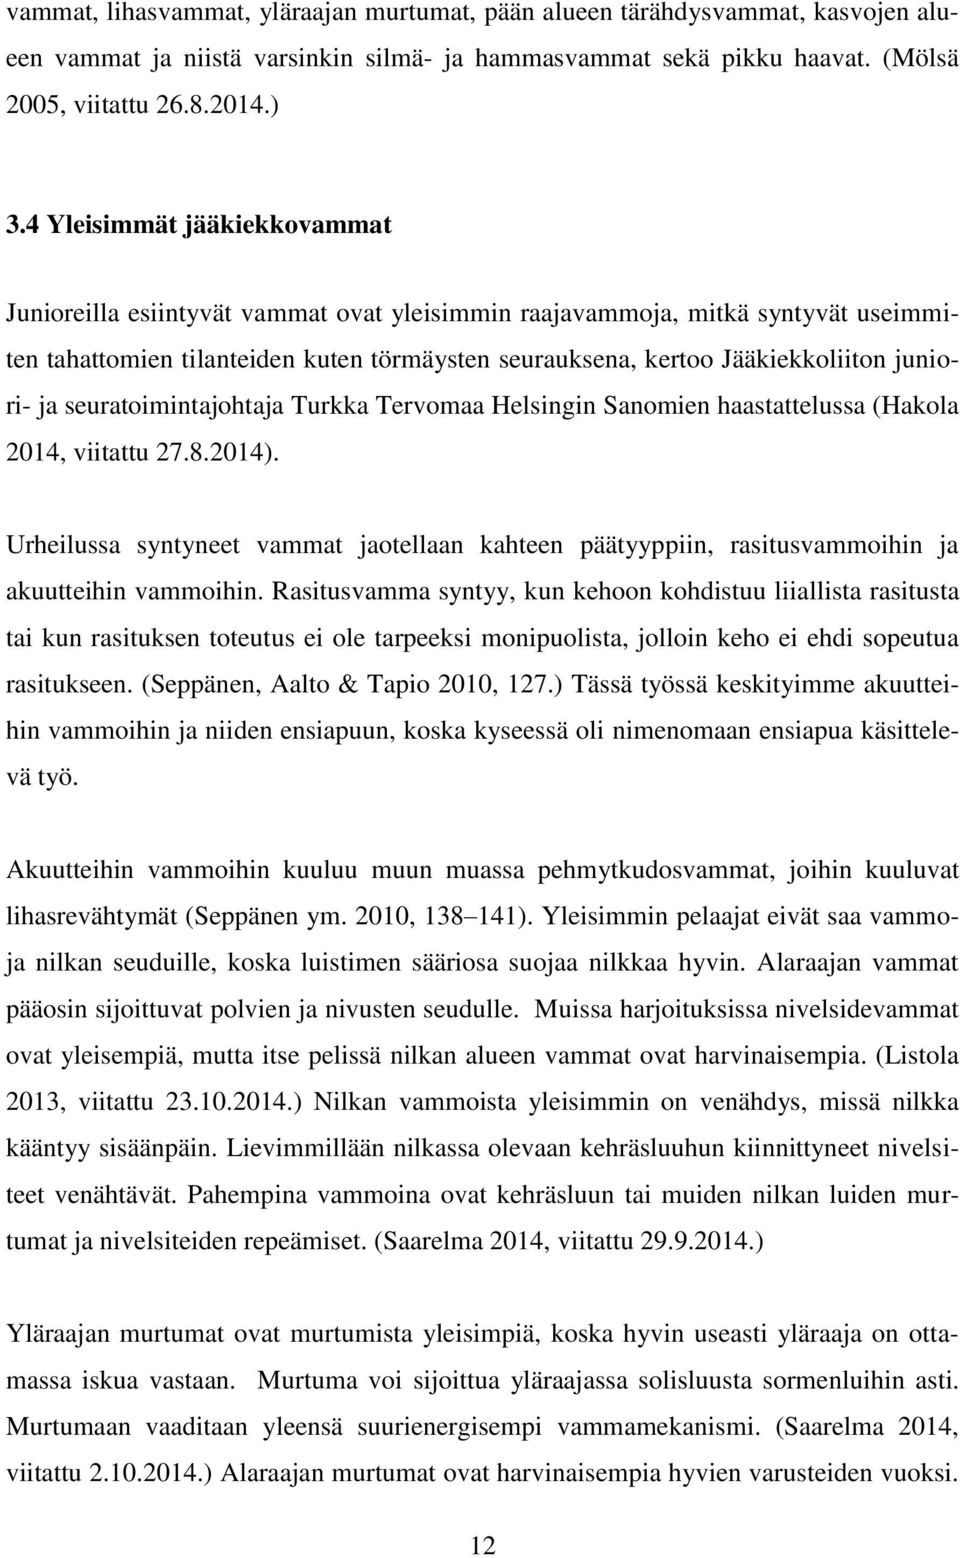 juniori- ja seuratoimintajohtaja Turkka Tervomaa Helsingin Sanomien haastattelussa (Hakola 2014, viitattu 27.8.2014).